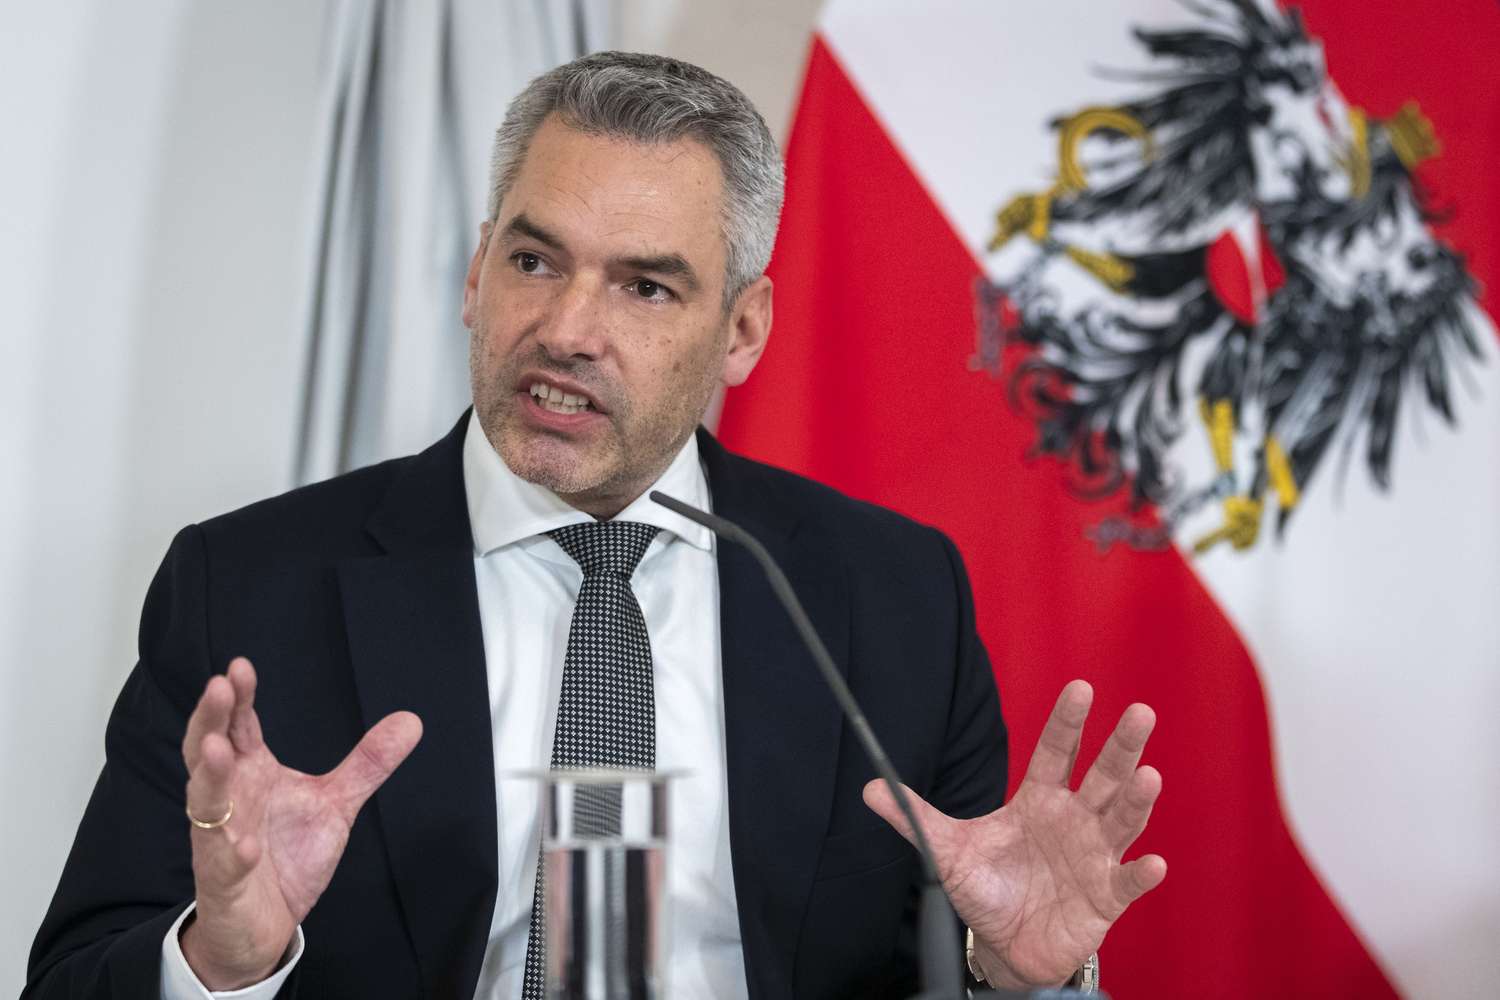 El jefe del gobierno de Austria se reunirá este lunes con Putin